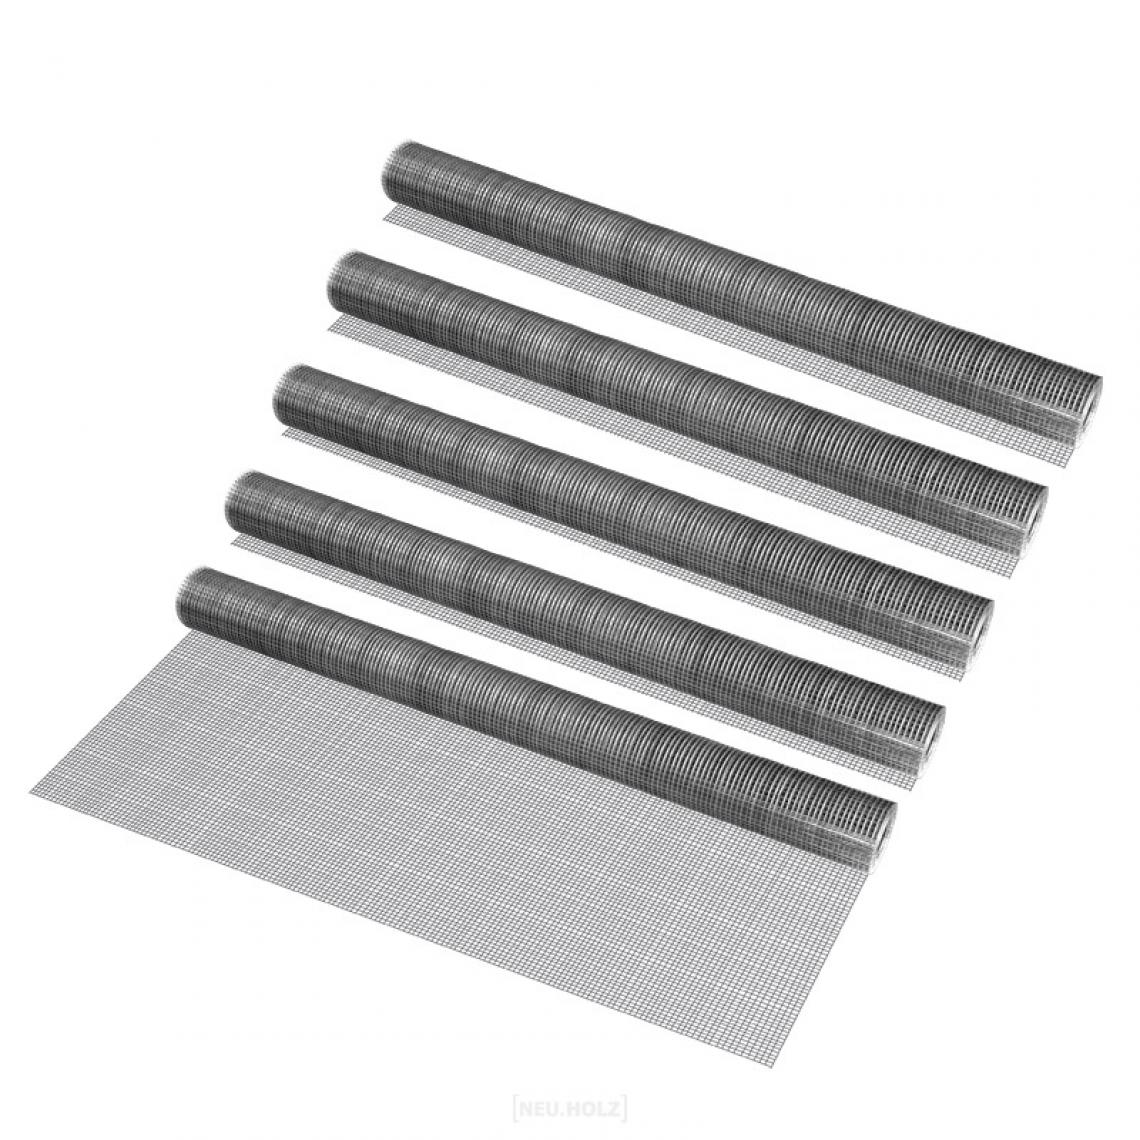 Pro.Tec - Grillage métallique en acier galvanisé 100 cm x 5 m gris argenté 5 rouleaux [pro.tec] - Clôture grillagée